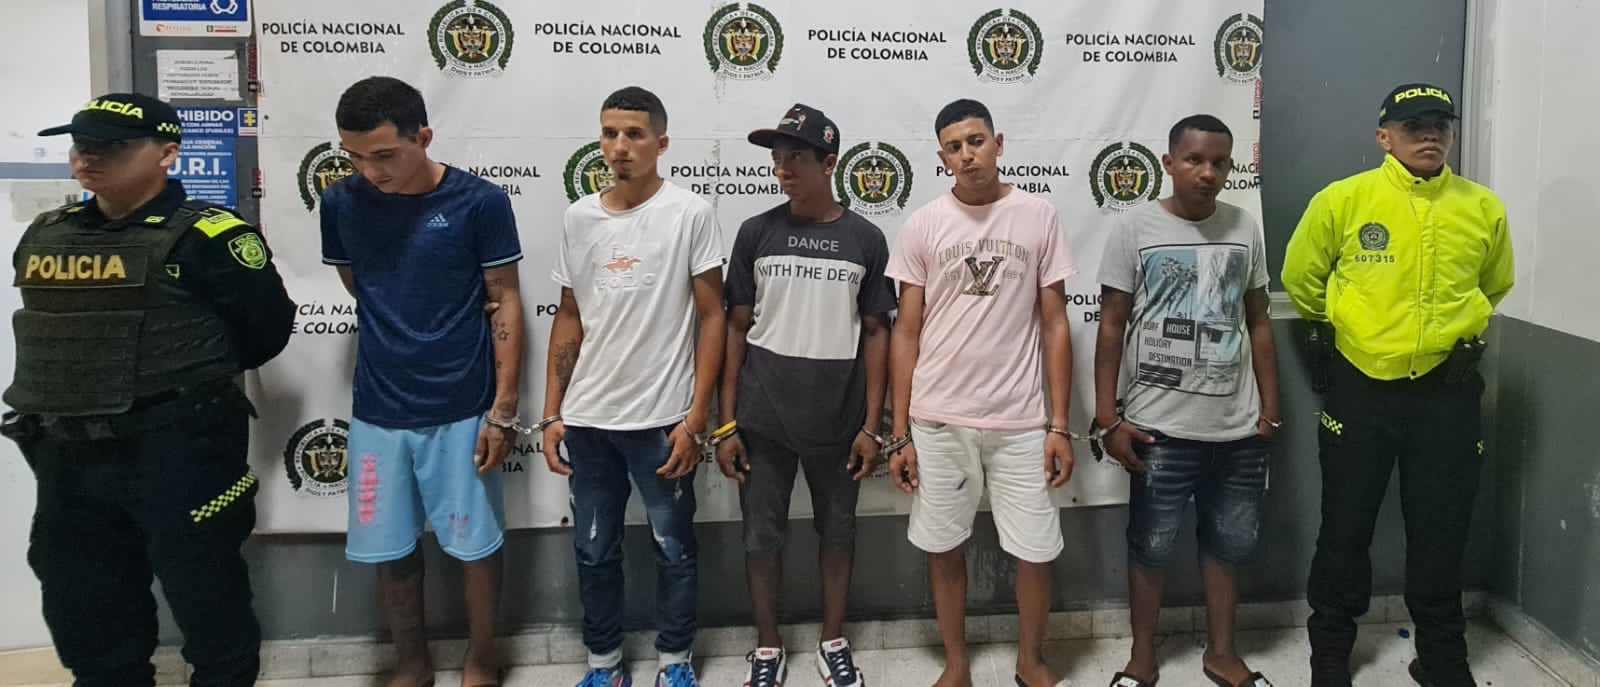 Policía Nacional desarticula la banda delincuencial ‘Los Paticos 2’ en Barranquilla